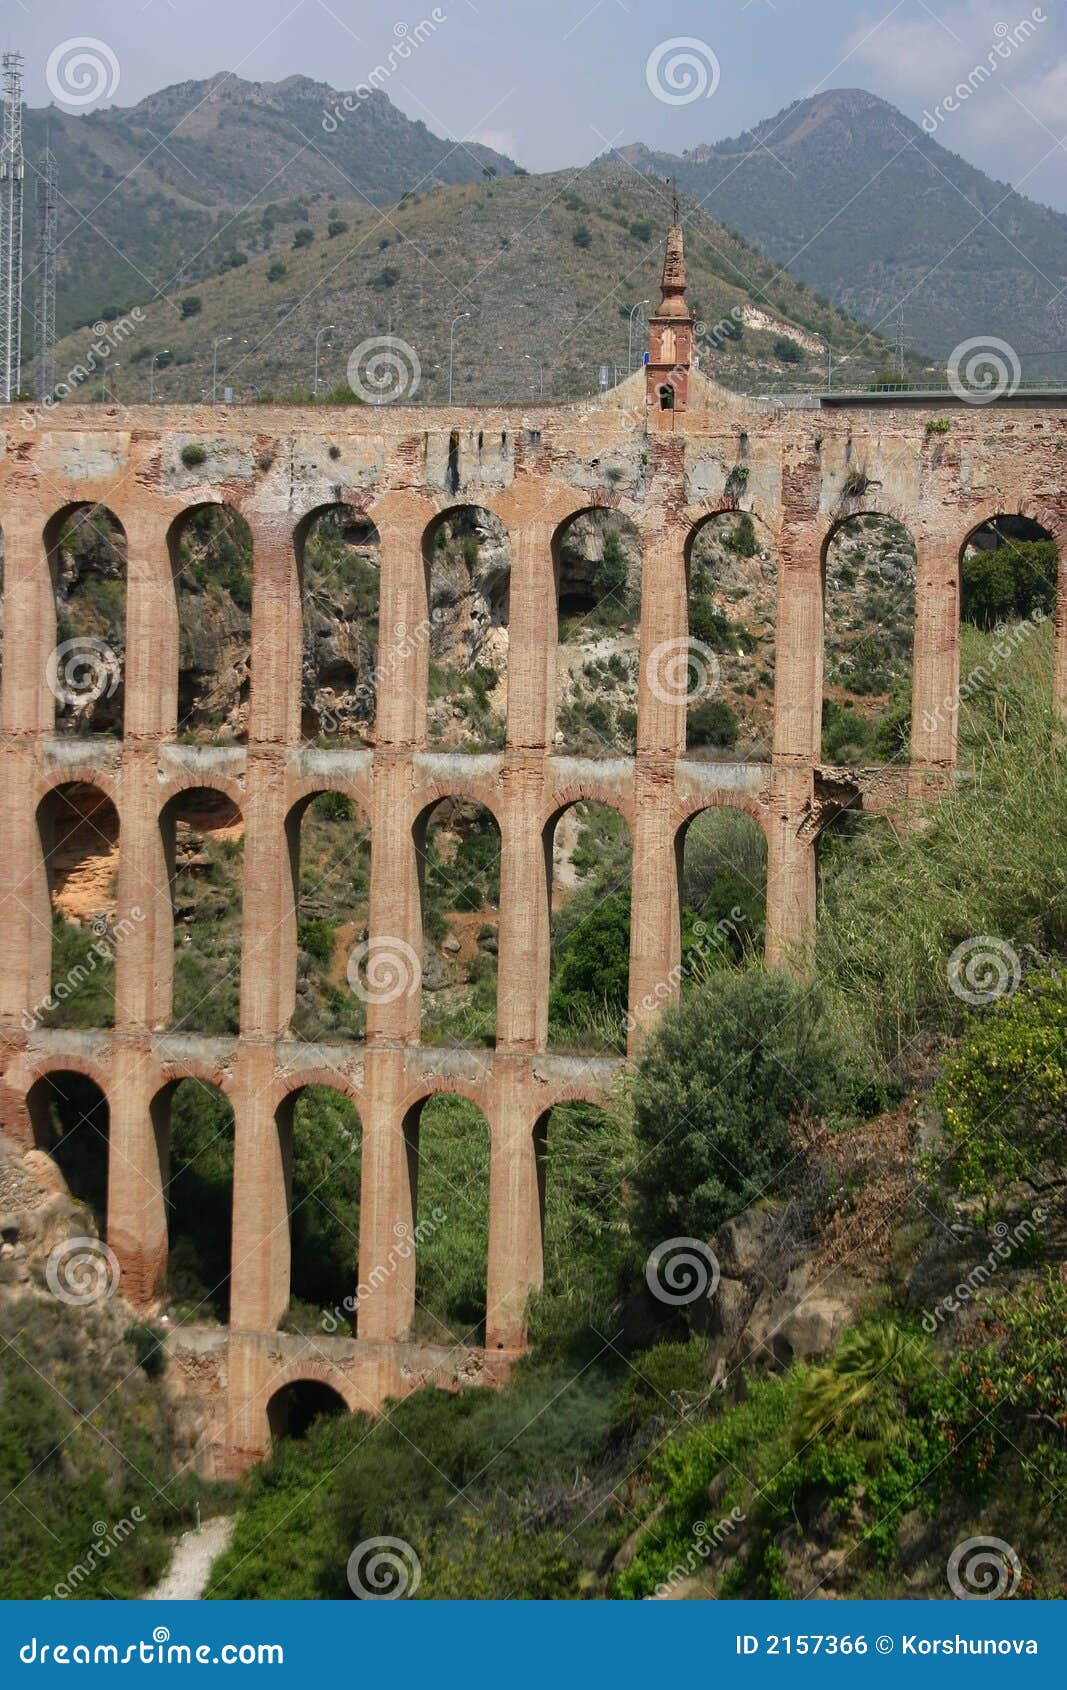 aqueduct, andalucia, spain